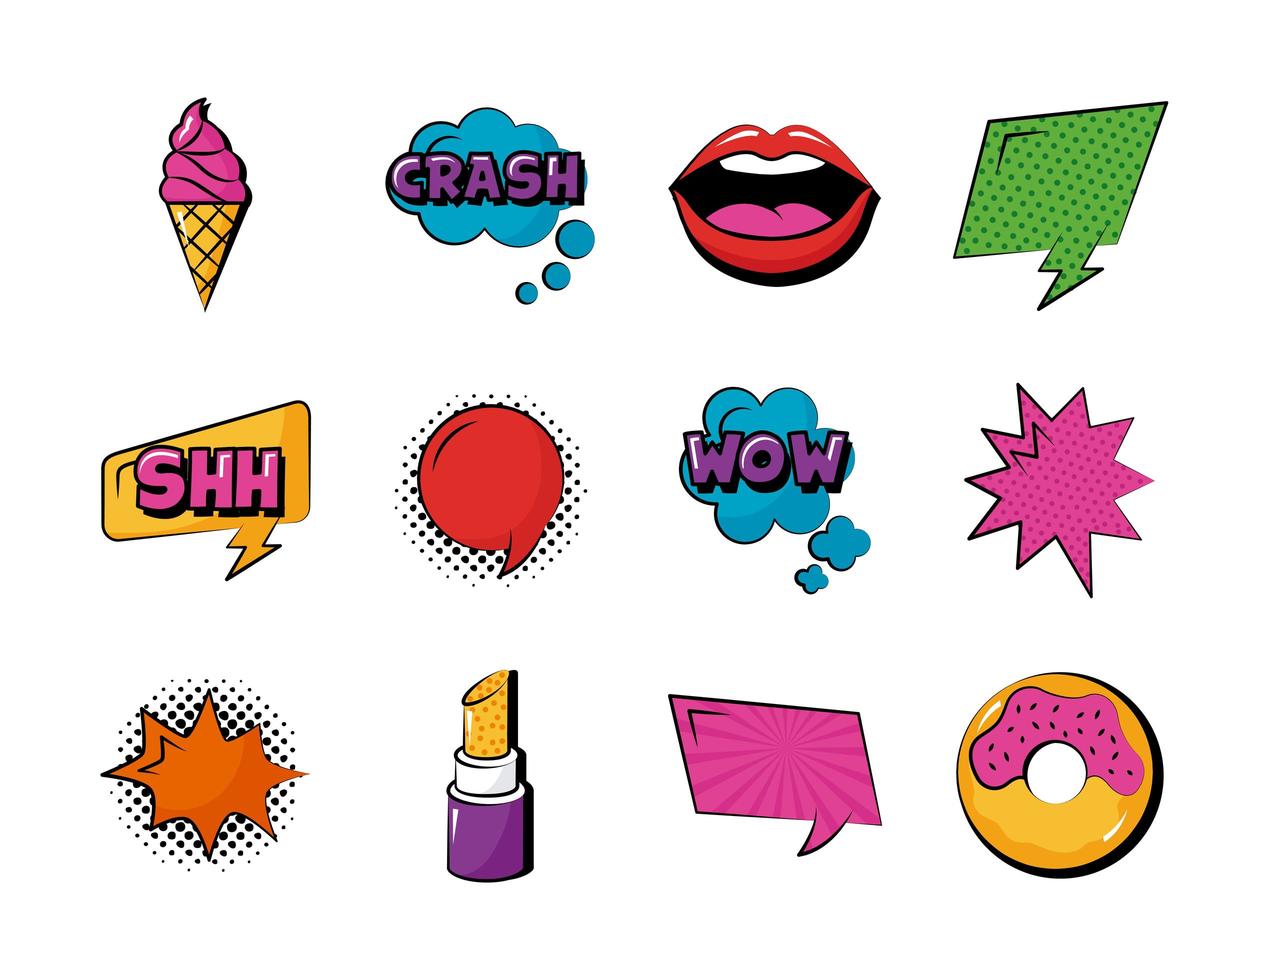 paquete de doce iconos de conjunto de arte pop vector